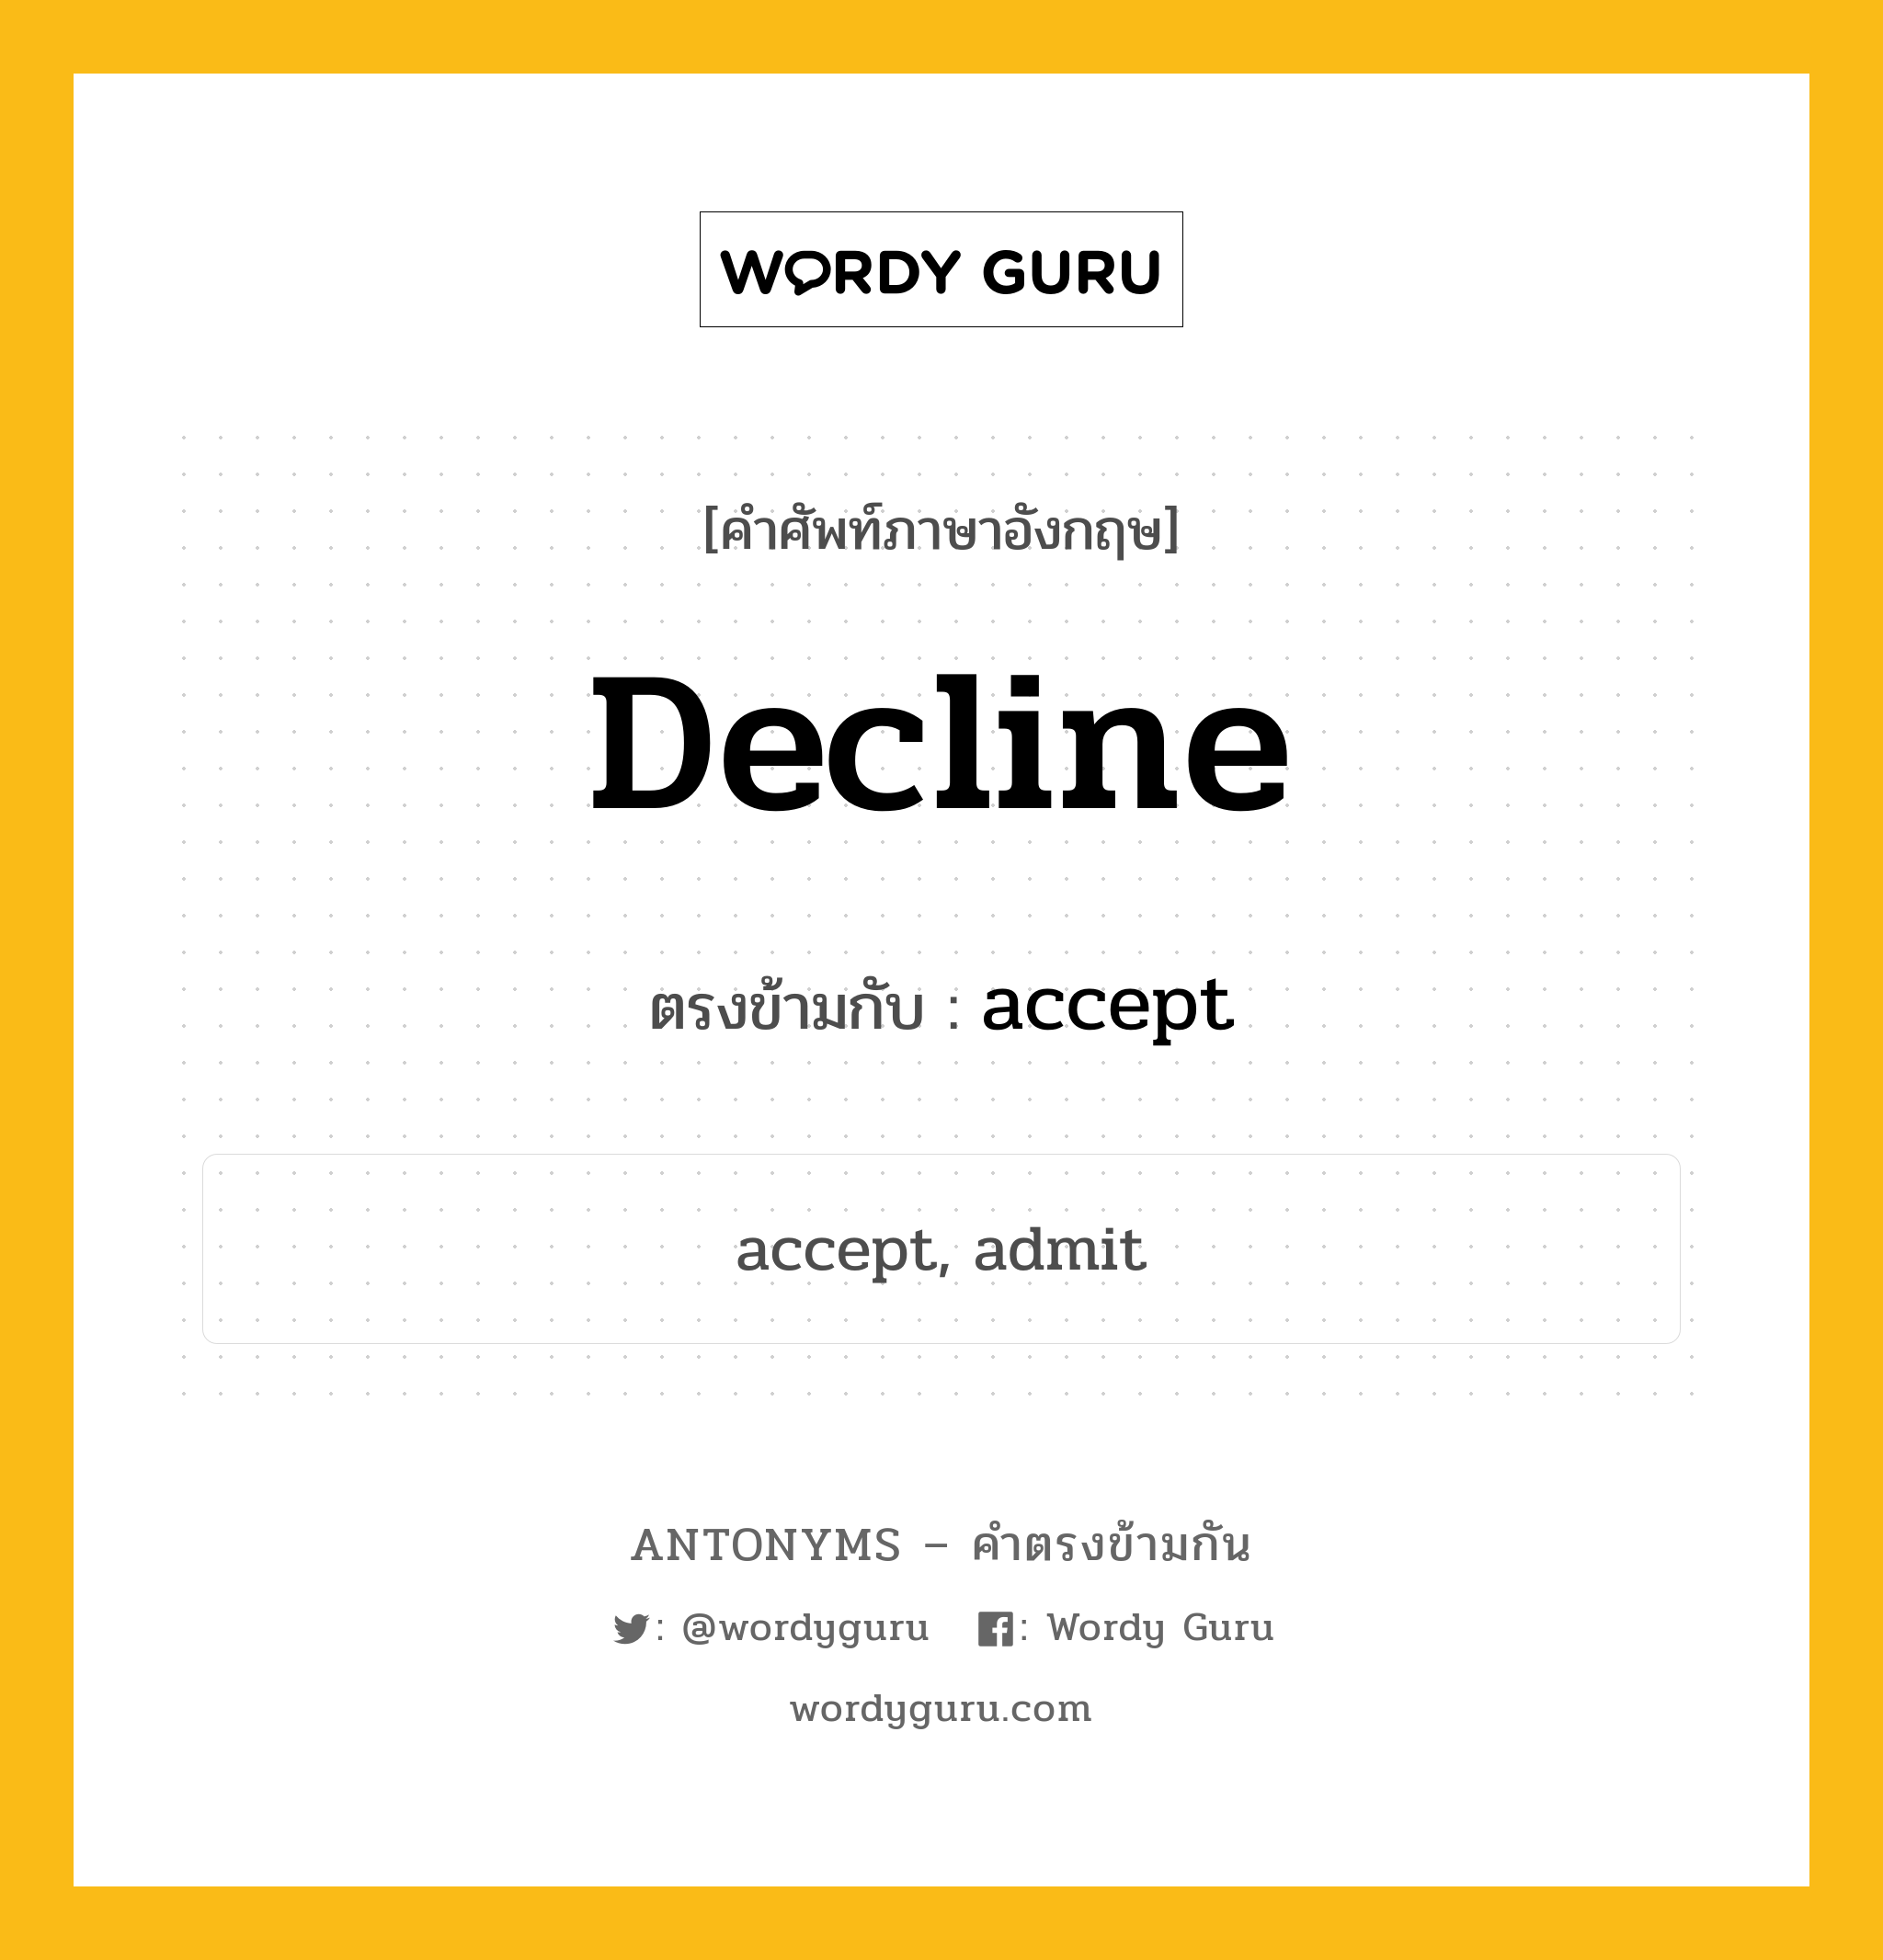 decline เป็นคำตรงข้ามกับคำไหนบ้าง?, คำศัพท์ภาษาอังกฤษ decline ตรงข้ามกับ accept หมวด accept